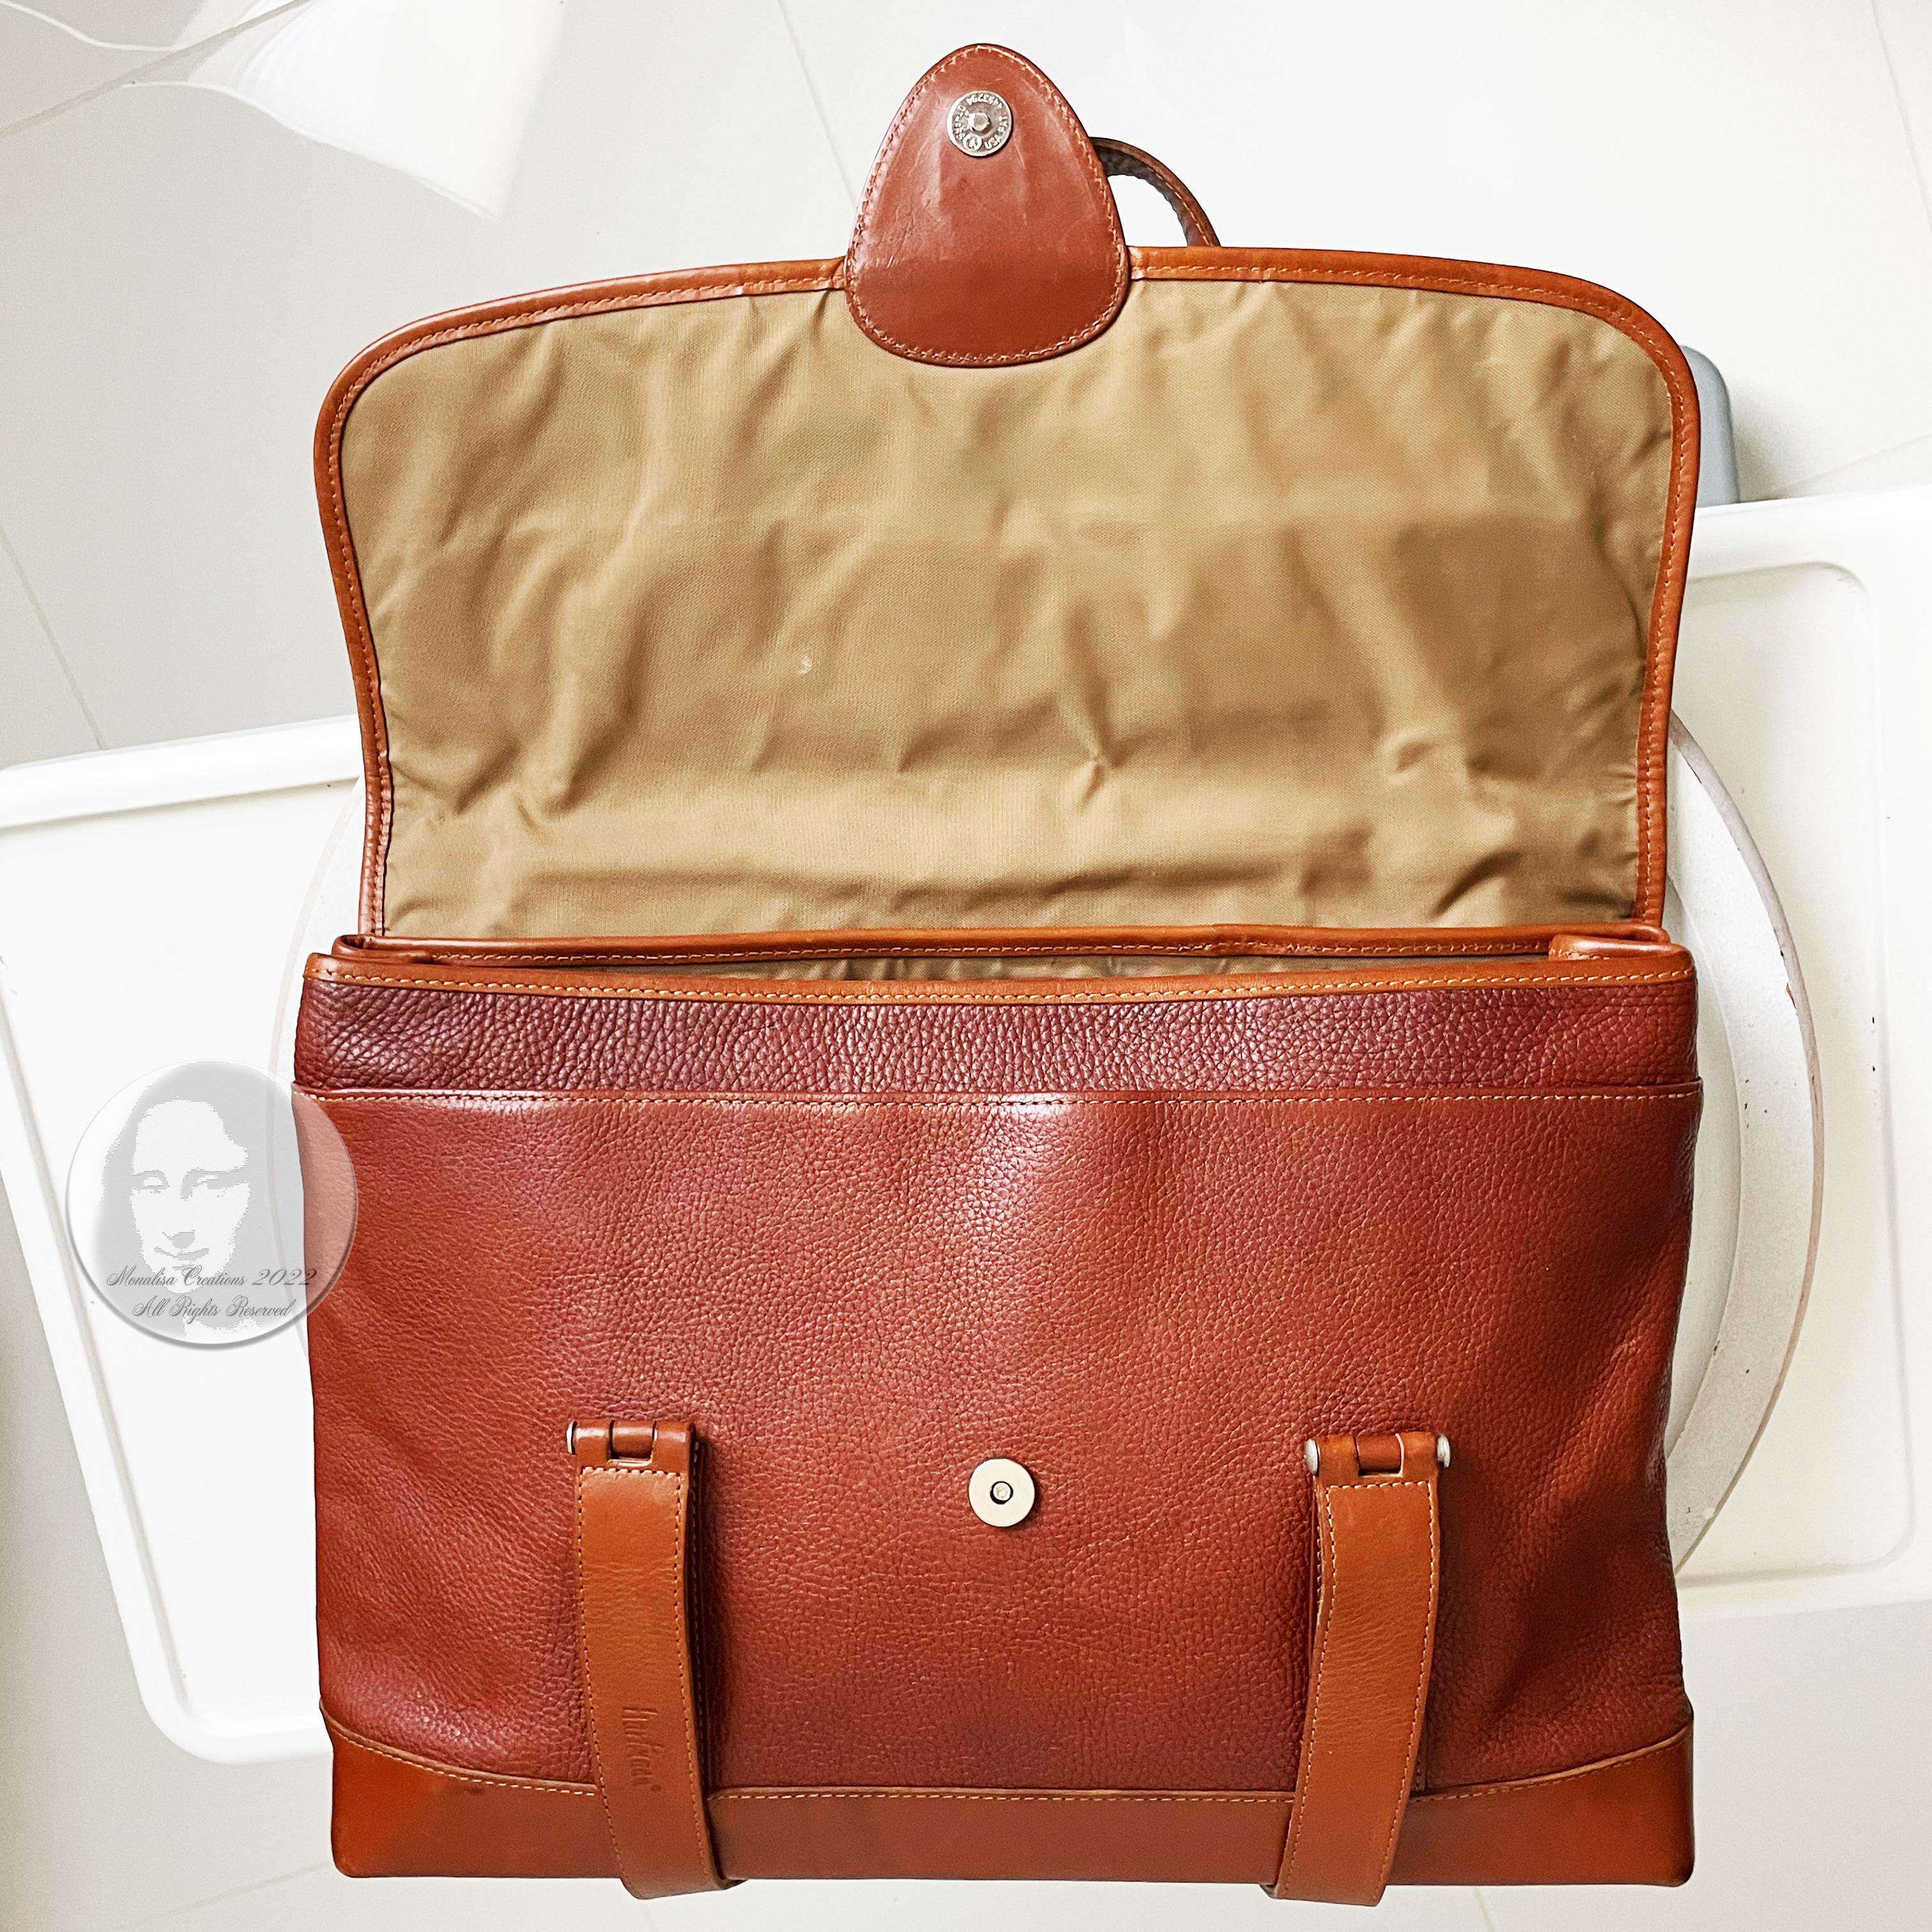 Hartmann Business Bag Briefcase Computer or Shoulder Bag British Tan Leather 8